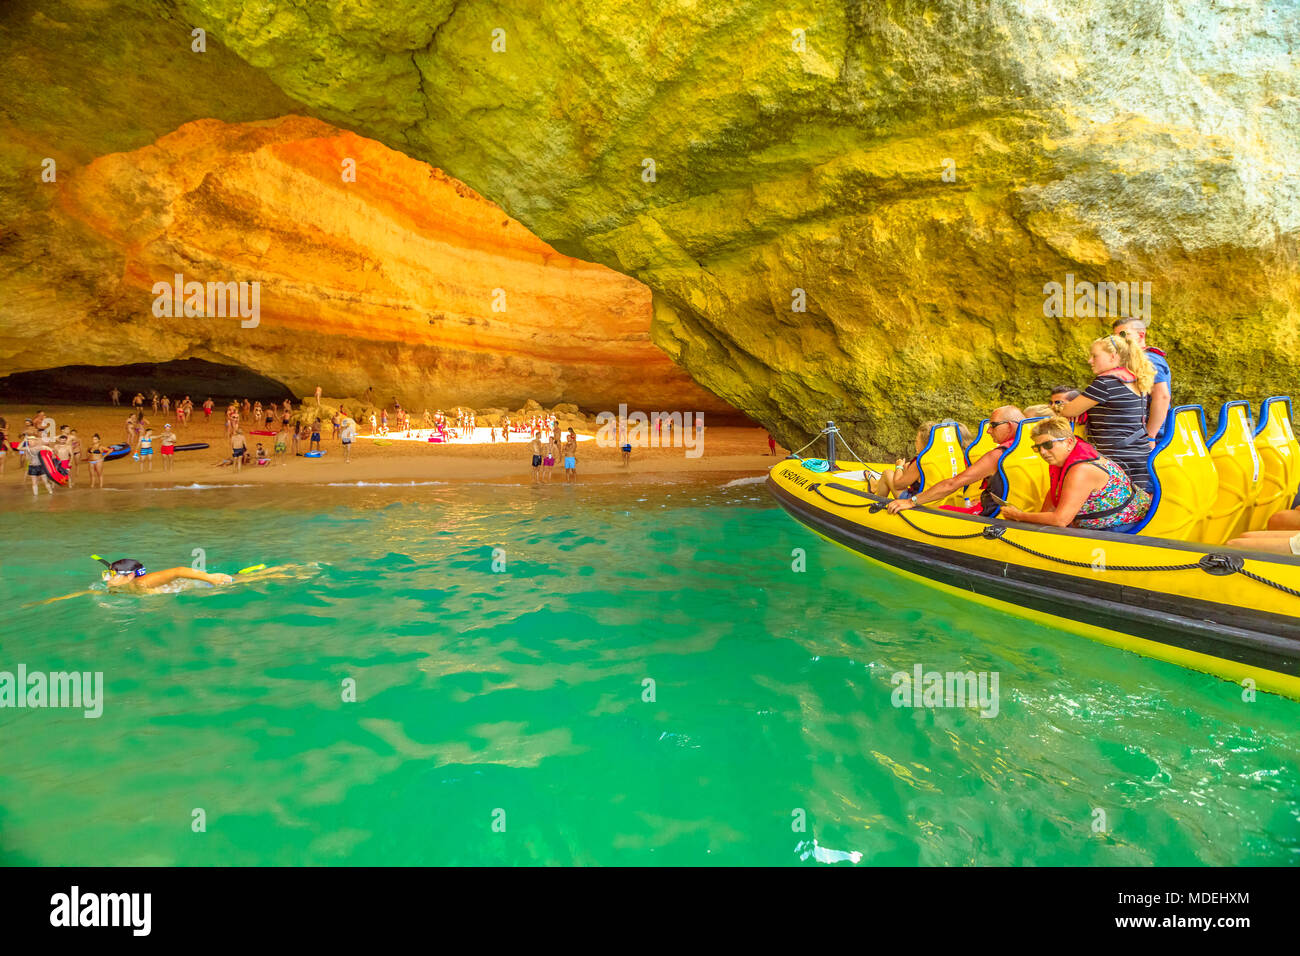 Benagil, Portugal - 23 August 2017: Benagil Höhle Bootsfahrt in Algar De Benagil, Höhle, die Top 10 der weltweit besten Höhlen aufgeführt. Algarve Küste in der Nähe von Lagoa, Portugal. Touristen besuchen eine beliebte Sehenswürdigkeit Stockfoto